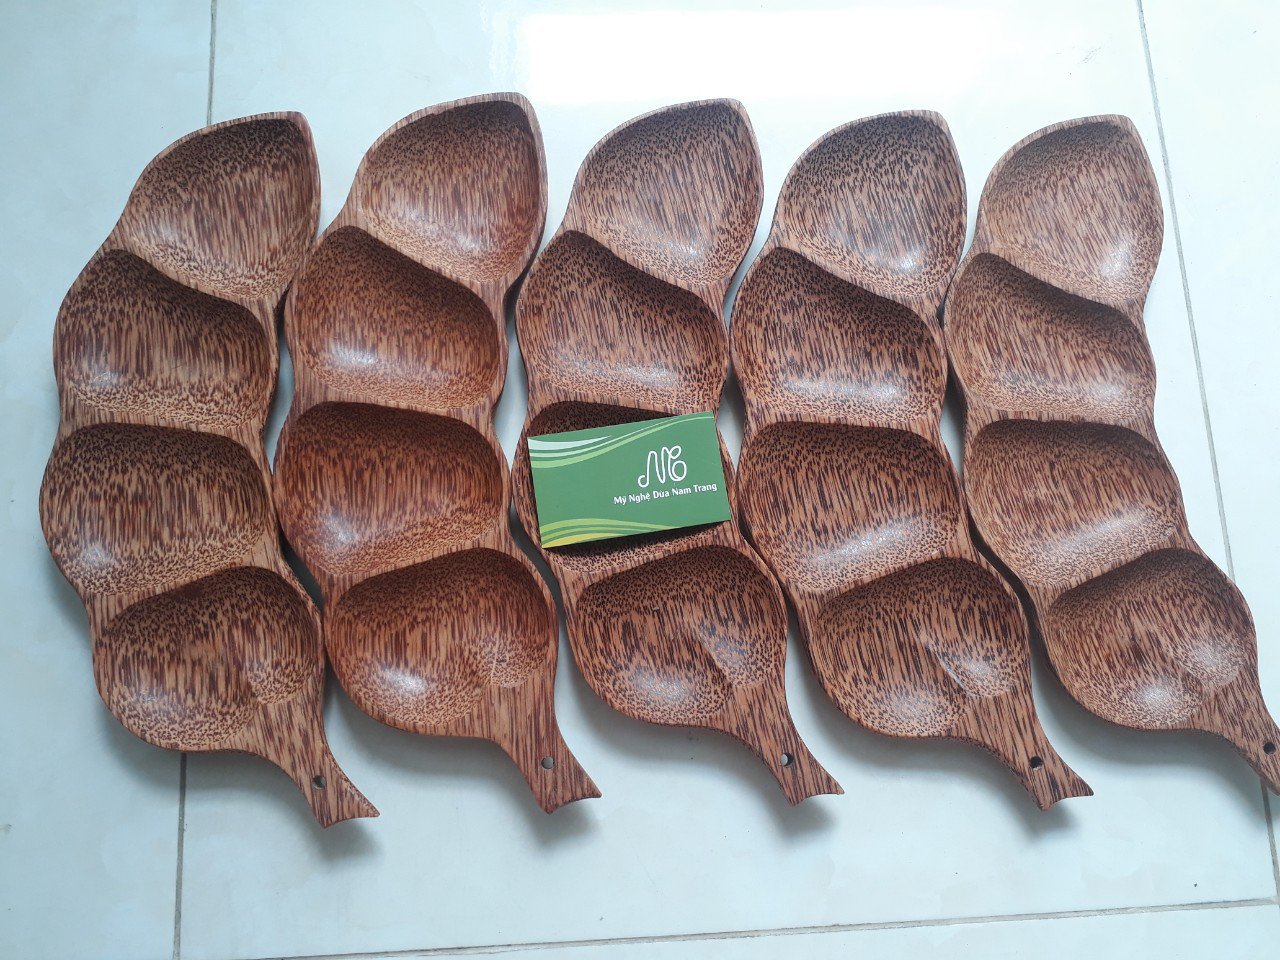 Dĩa me gỗ dừa mỹ nghệ - Mỹ Nghệ Dừa Nam Trang